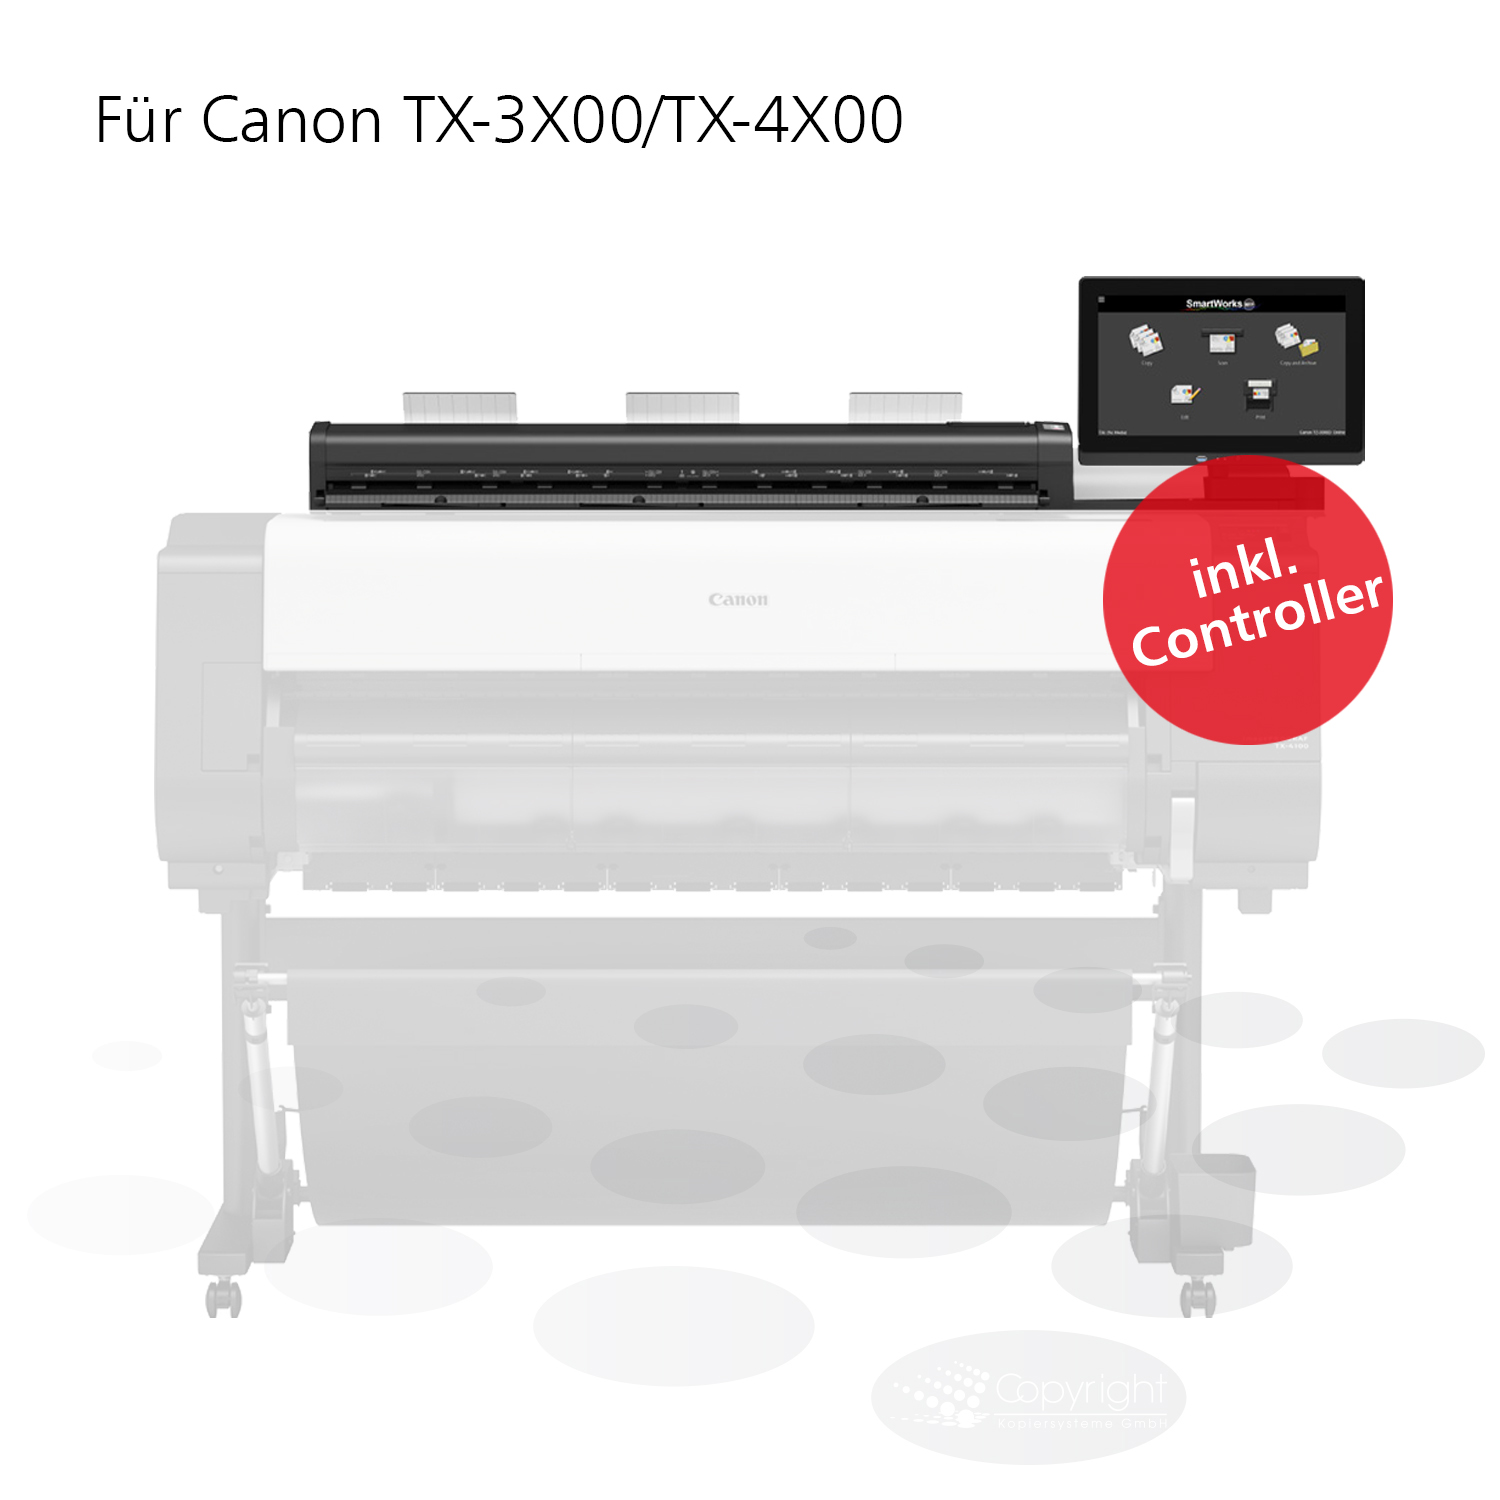 Canon Z36 Scanner inkl. Controller für TX-3X00/TX-4X00